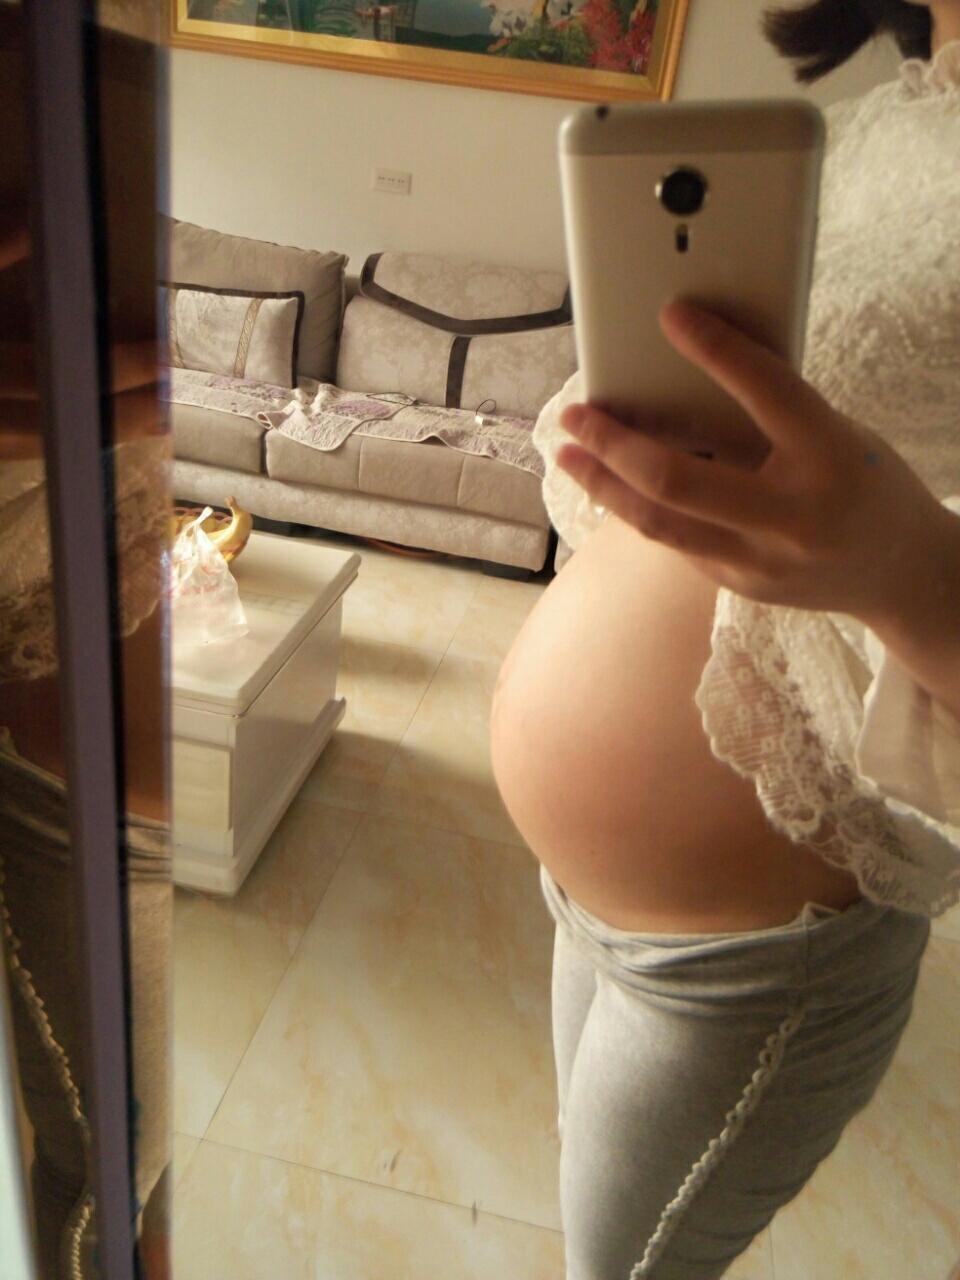 我的大孕肚31周图片